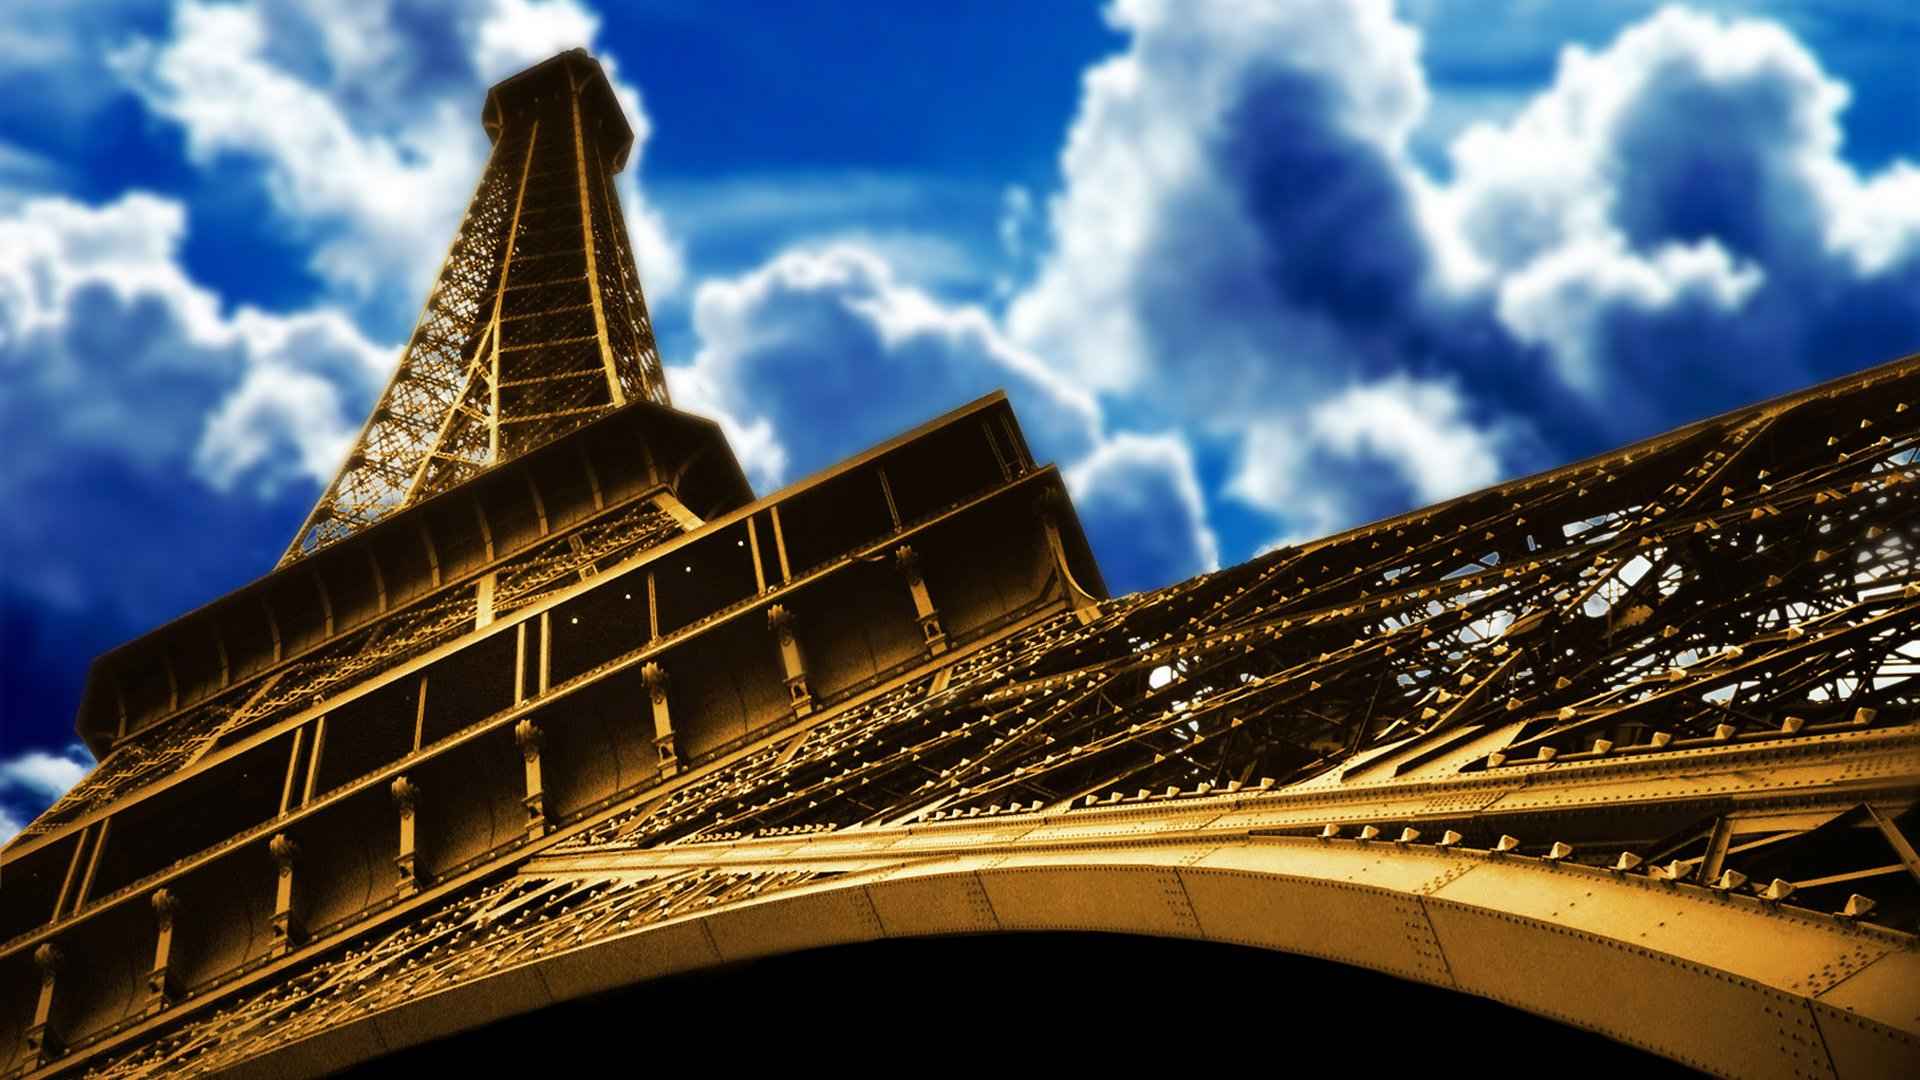 法国埃菲尔铁塔风景图片壁纸